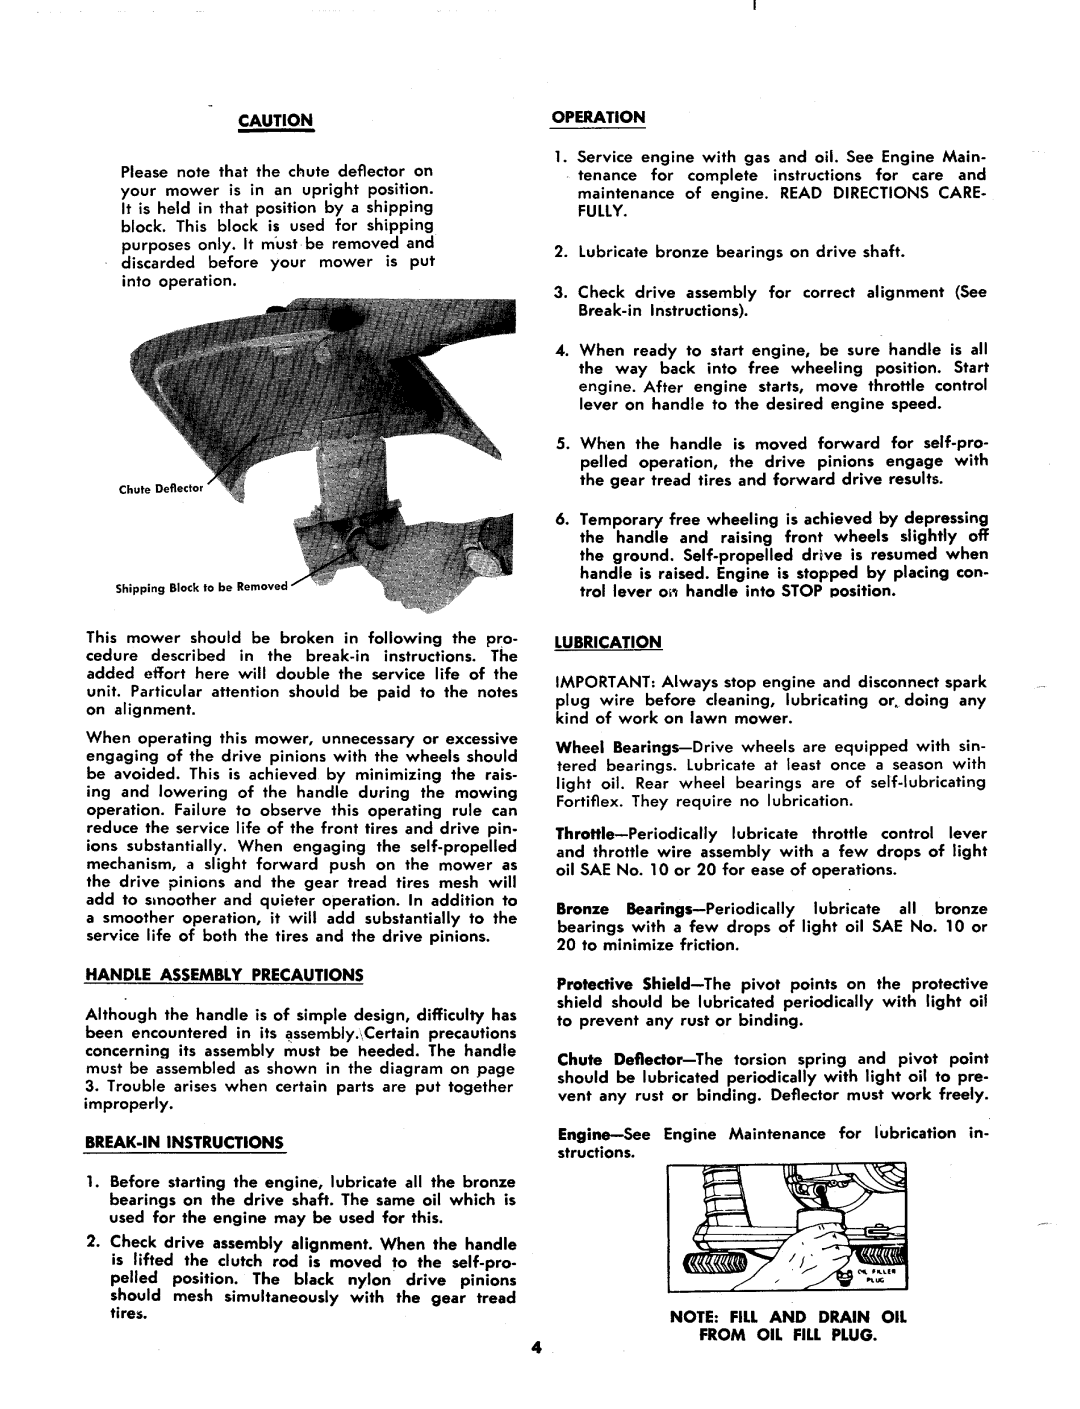 MTD 125-270A manual 